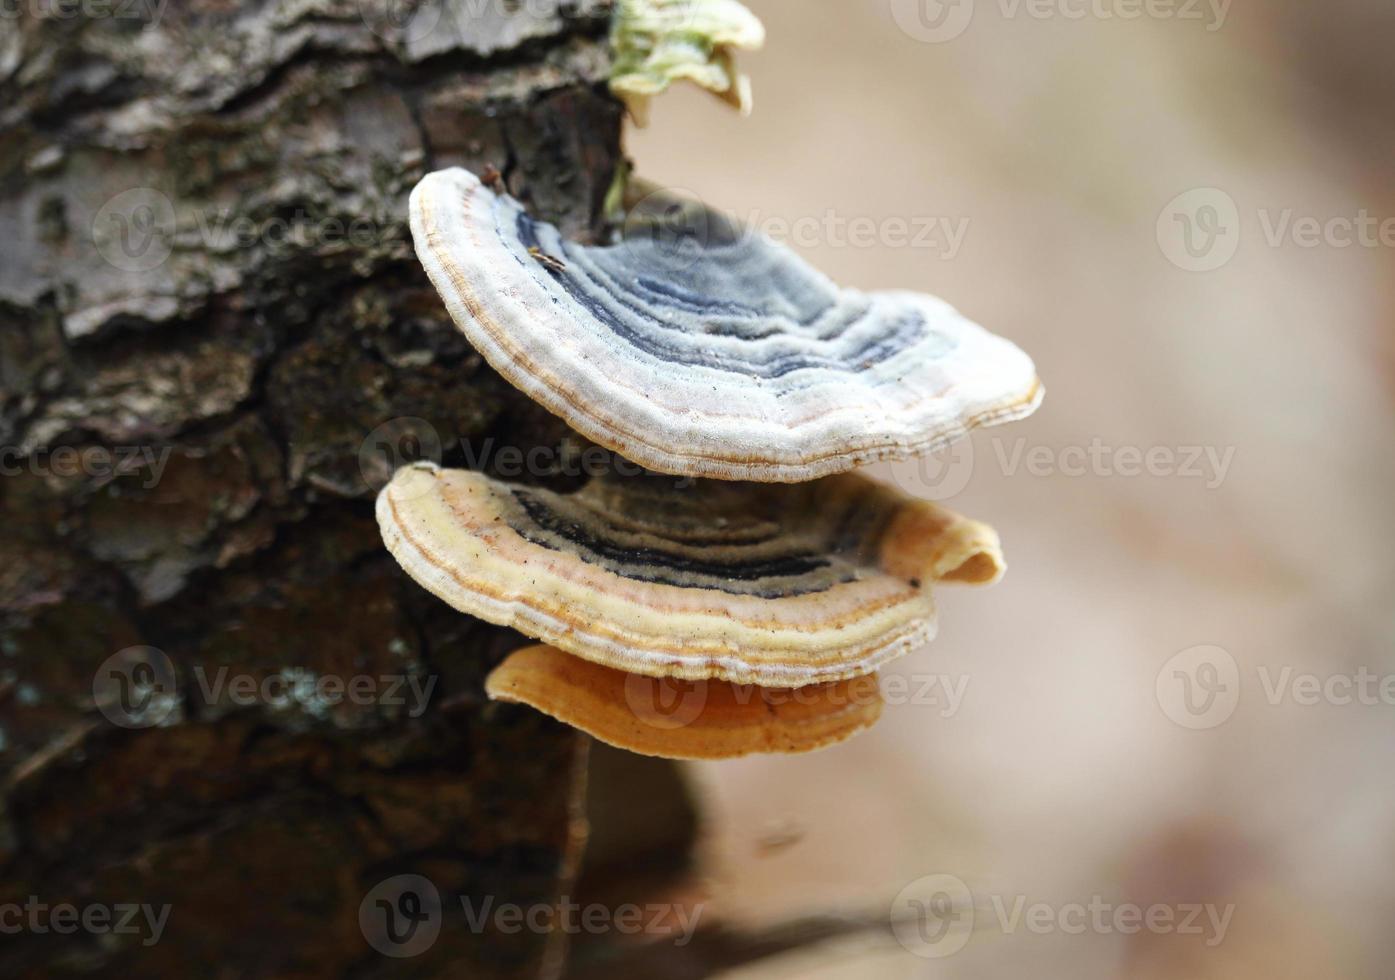 wilde jonge paddenstoelen die op boomstam groeien foto